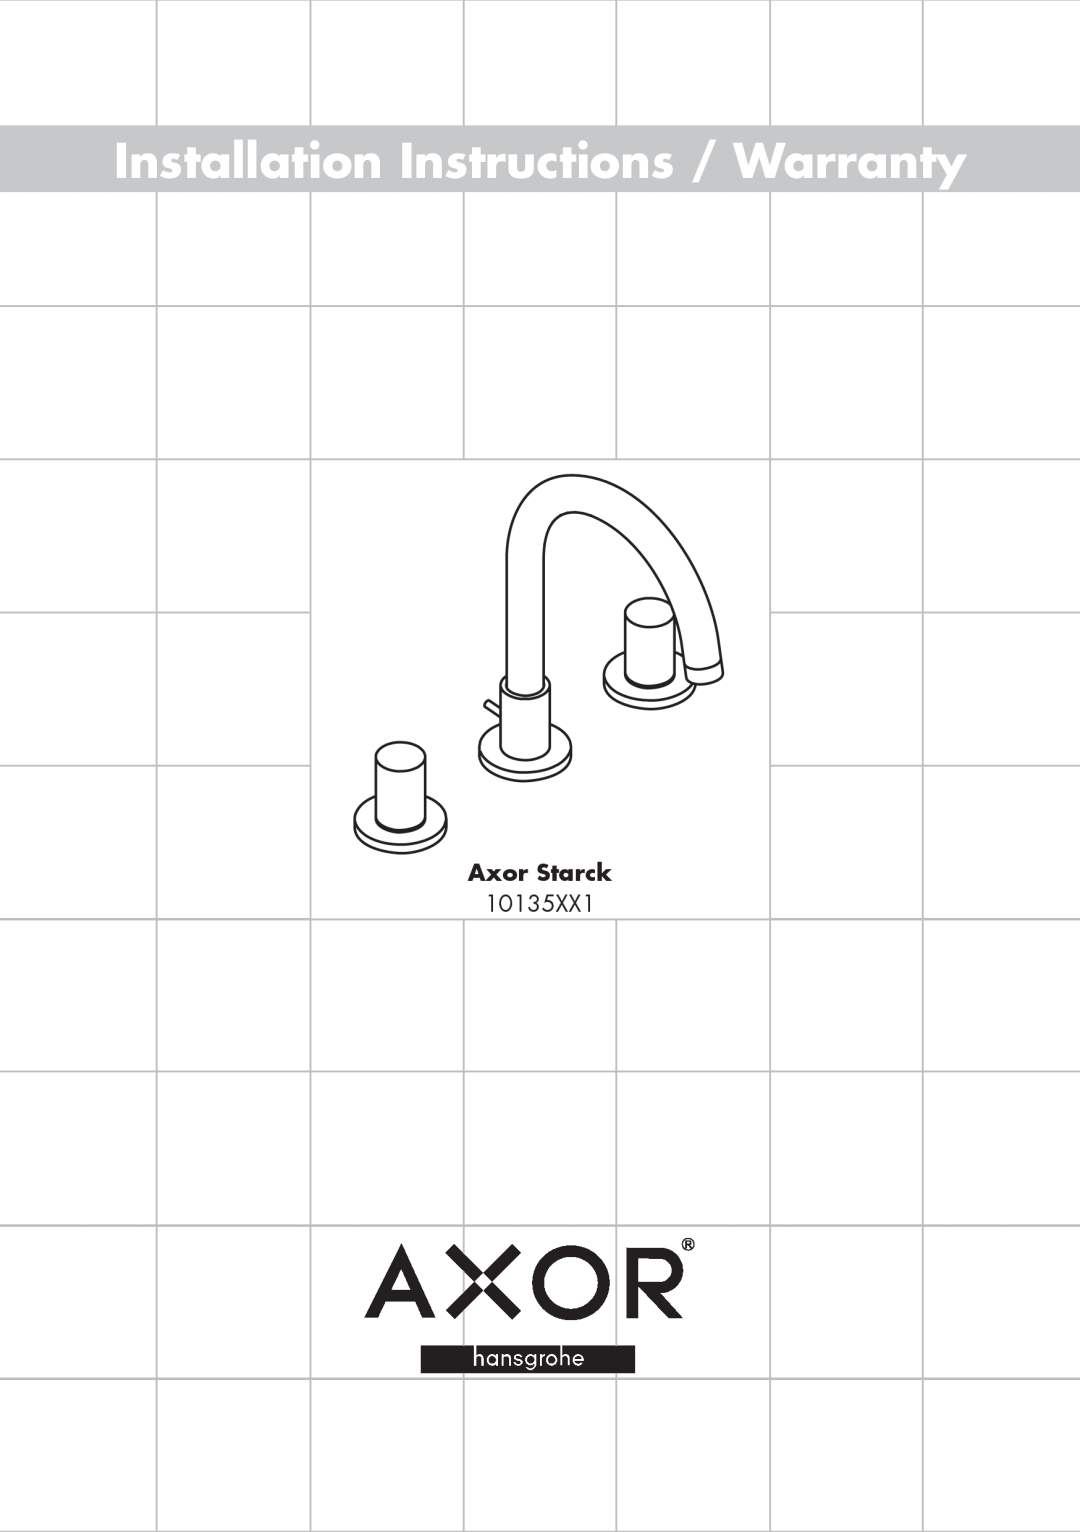 Axor 10135XX1 installation instructions Installation Instructions / Warranty, Axor Starck 